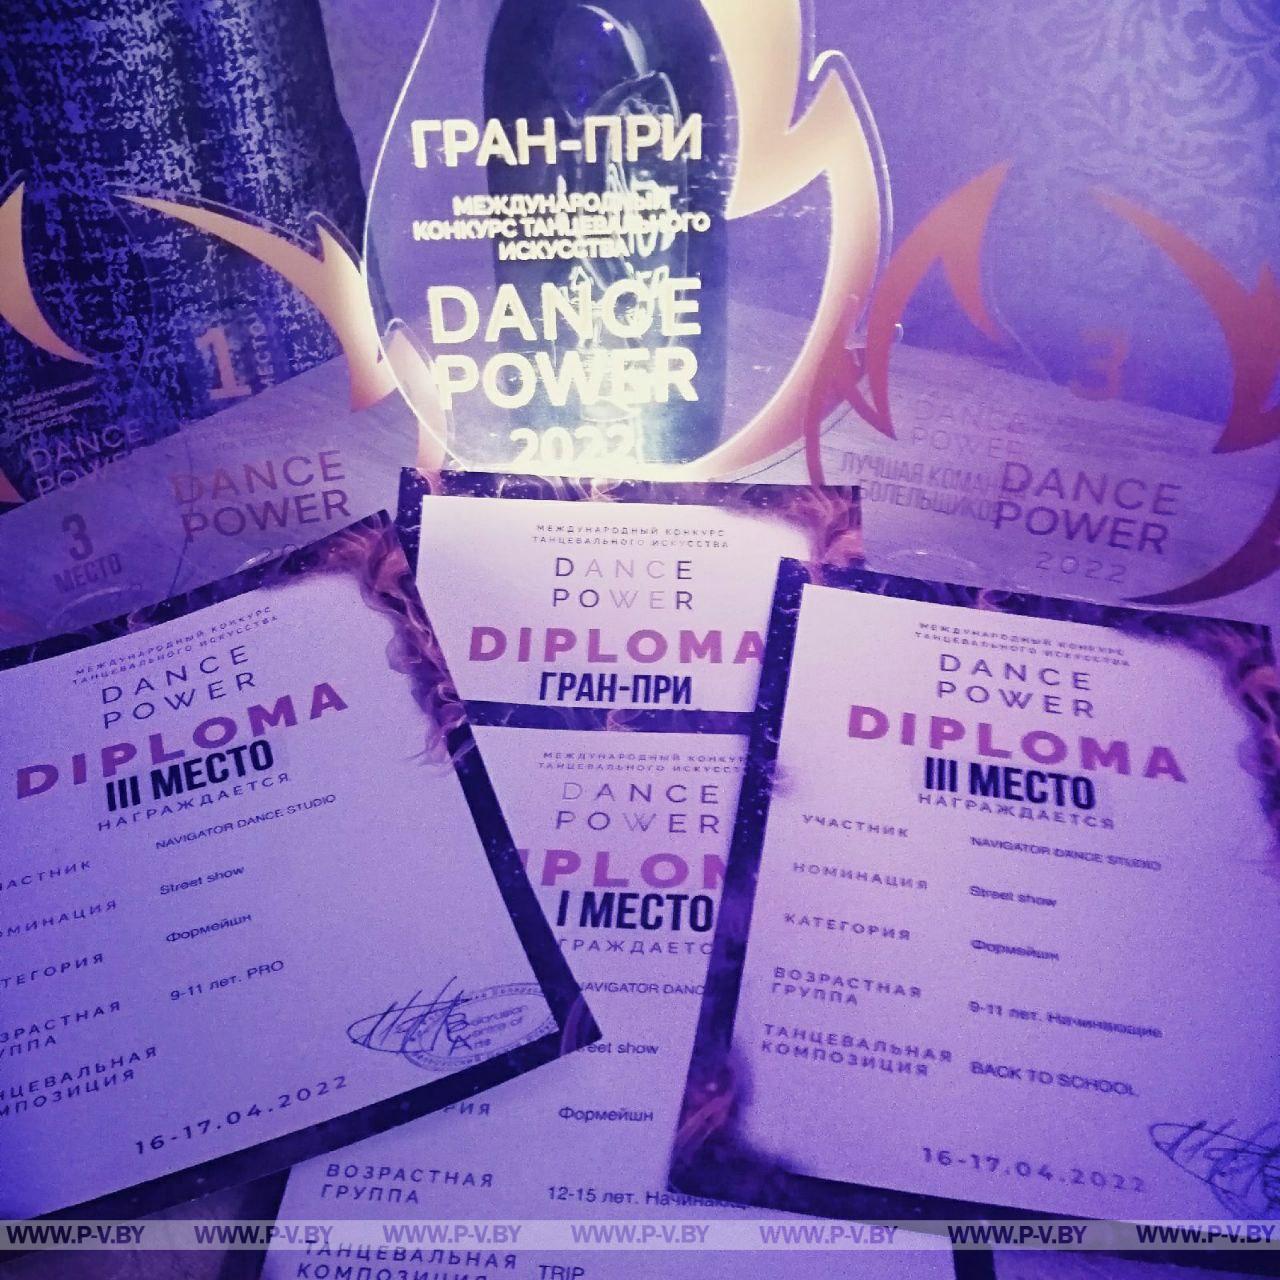 17 апреля в г. Минске состоялся республиканский конкурс "DANCE POWER"